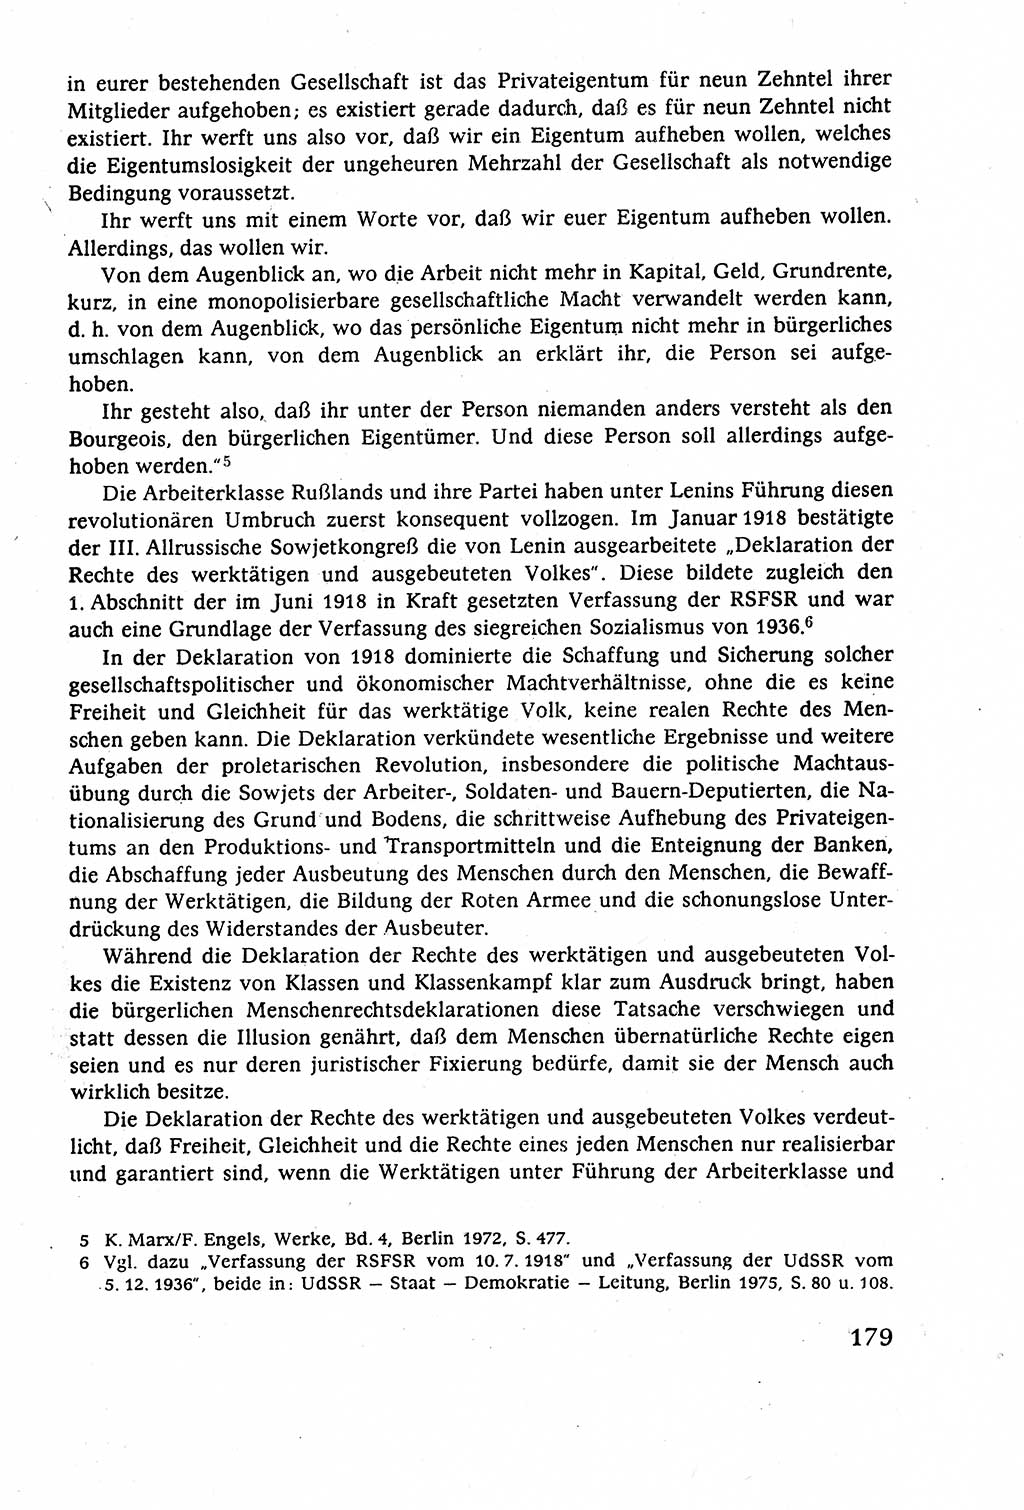 Staatsrecht der DDR (Deutsche Demokratische Republik), Lehrbuch 1977, Seite 179 (St.-R. DDR Lb. 1977, S. 179)